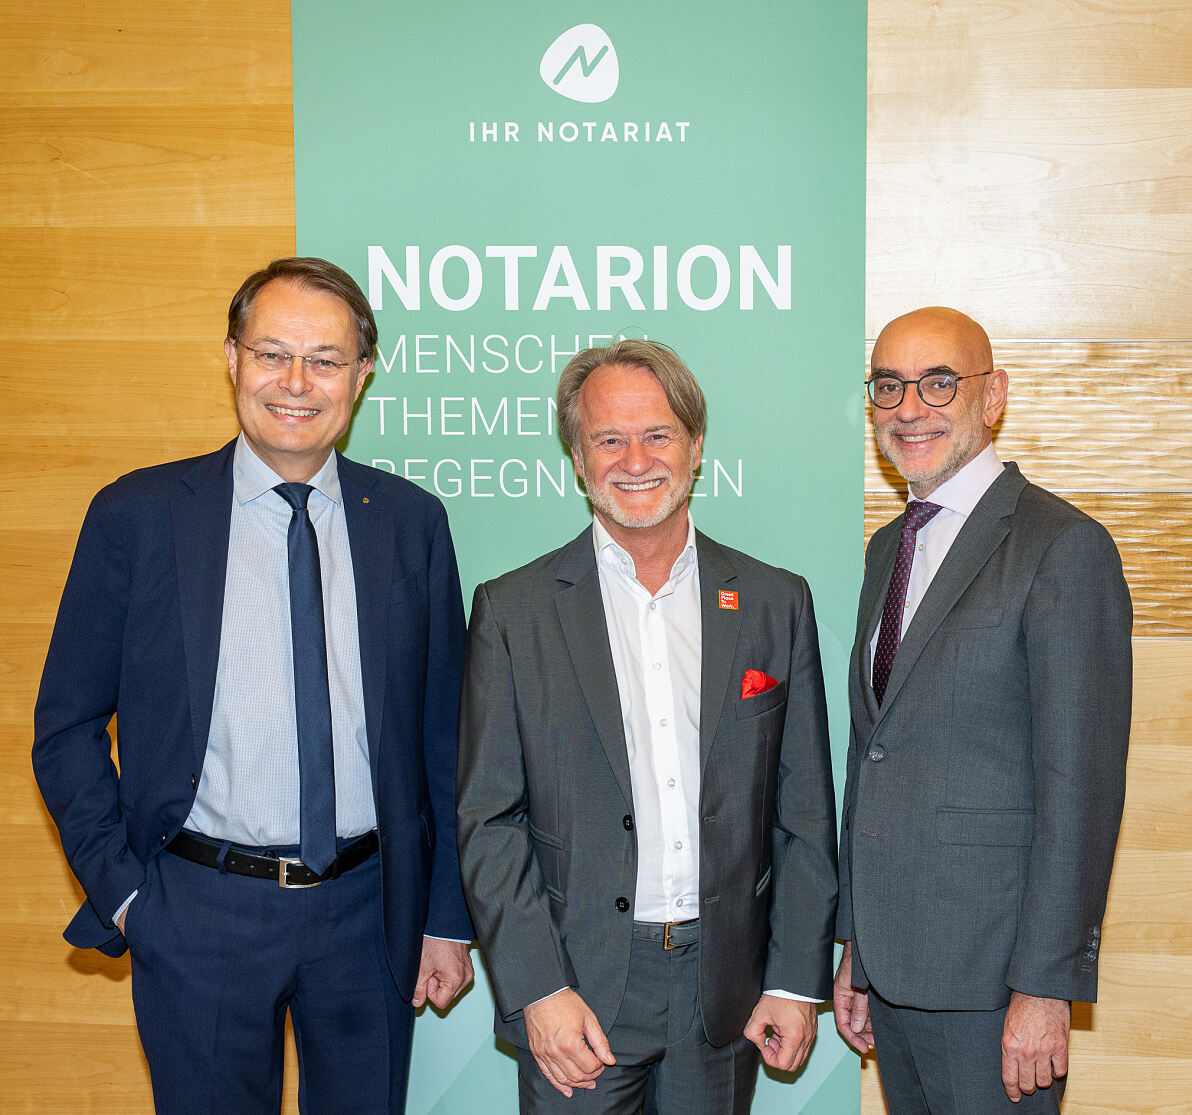 Gerhard Drexel (Aufsichtsratspräsident Spar Österreich), Jörg Spreitzer (Managing Director Great Place to Work) und Michael Umfahrer (Präsident der Österreichischen Notariatskammer) bei der Notarion-Veranstaltung.